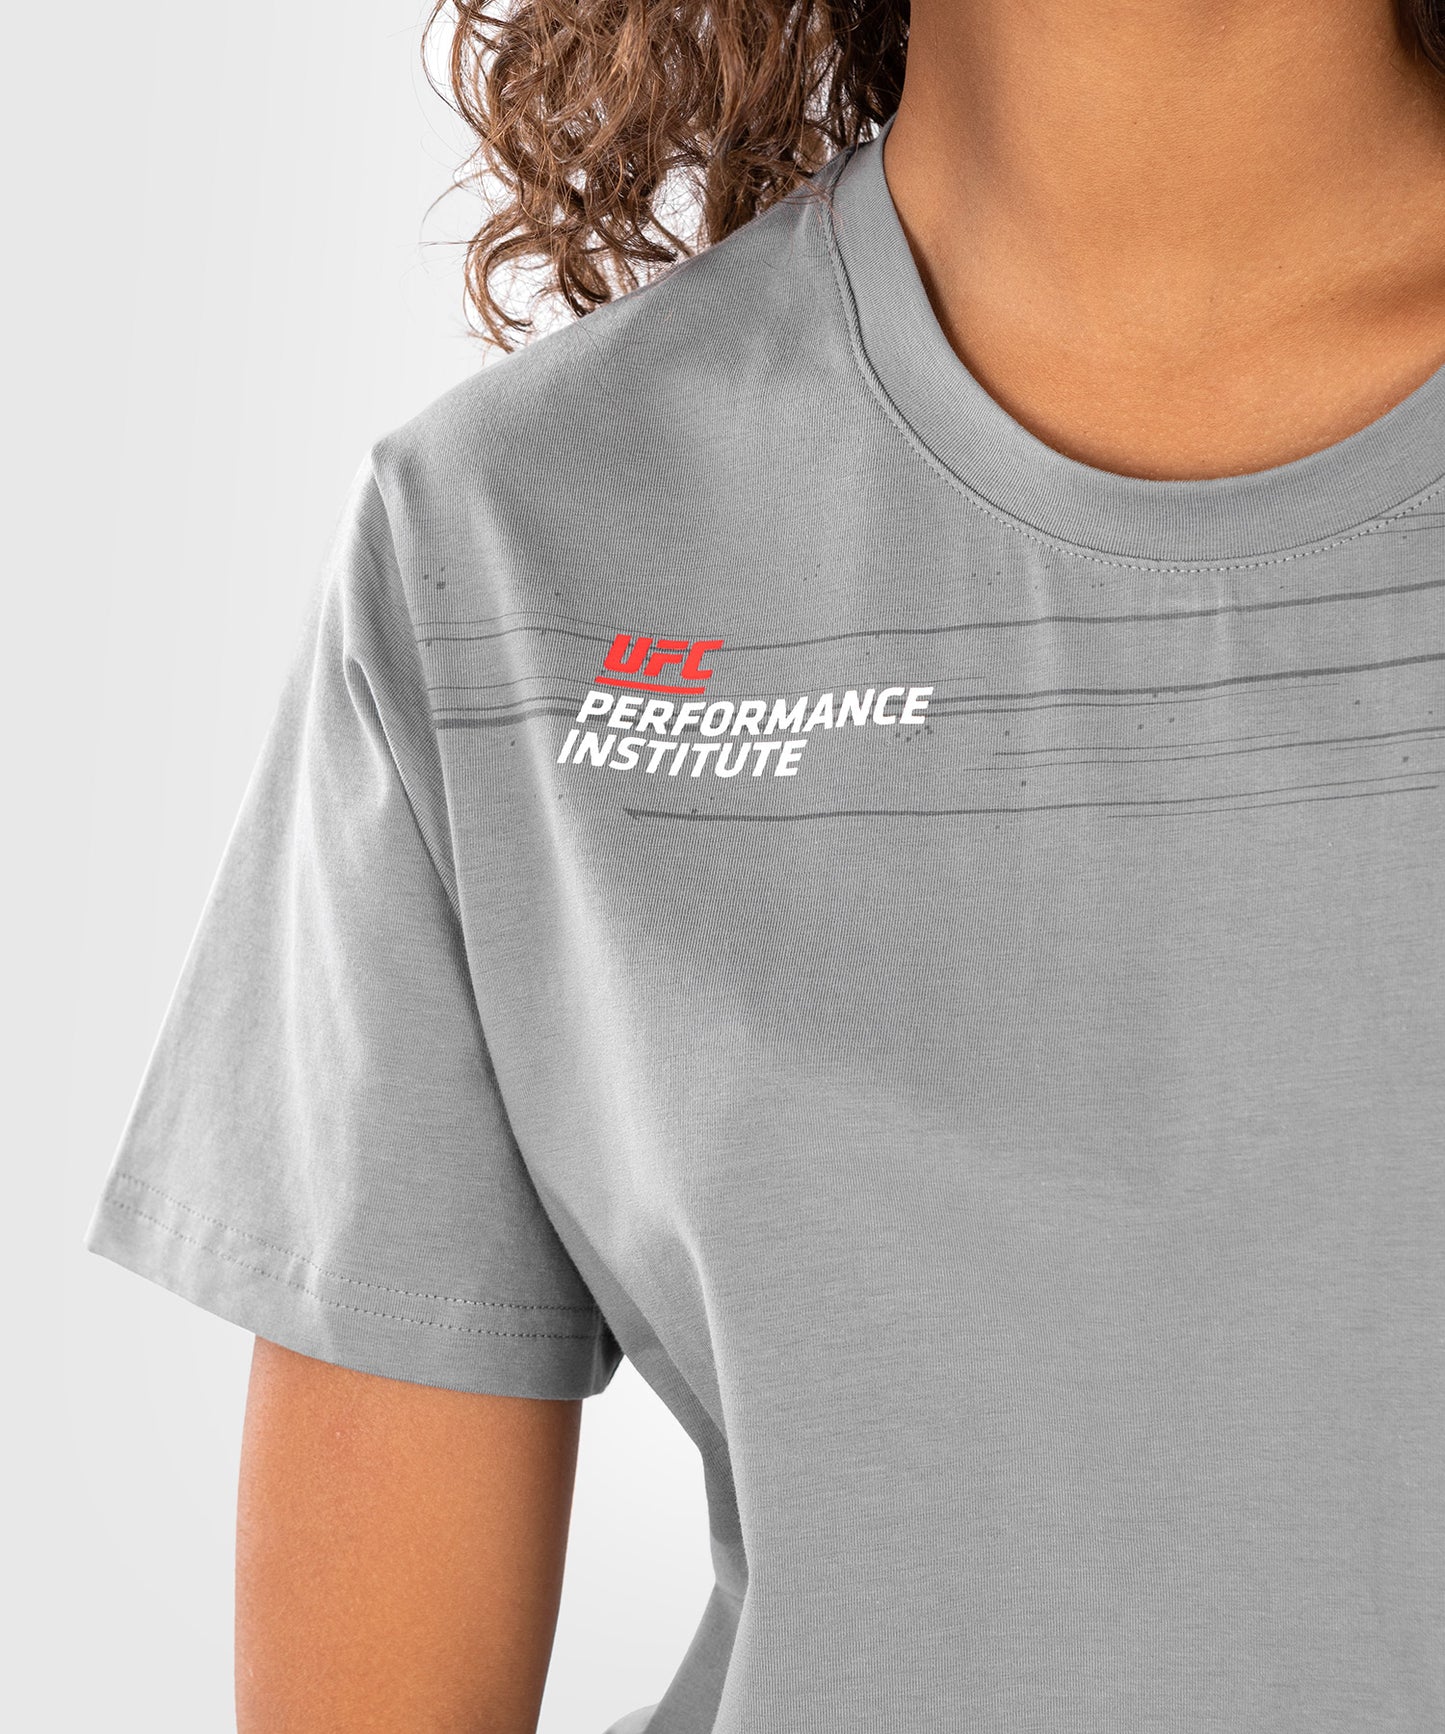 UFC Venum Performance Institute 2.0  Camiseta de mujer - Gris